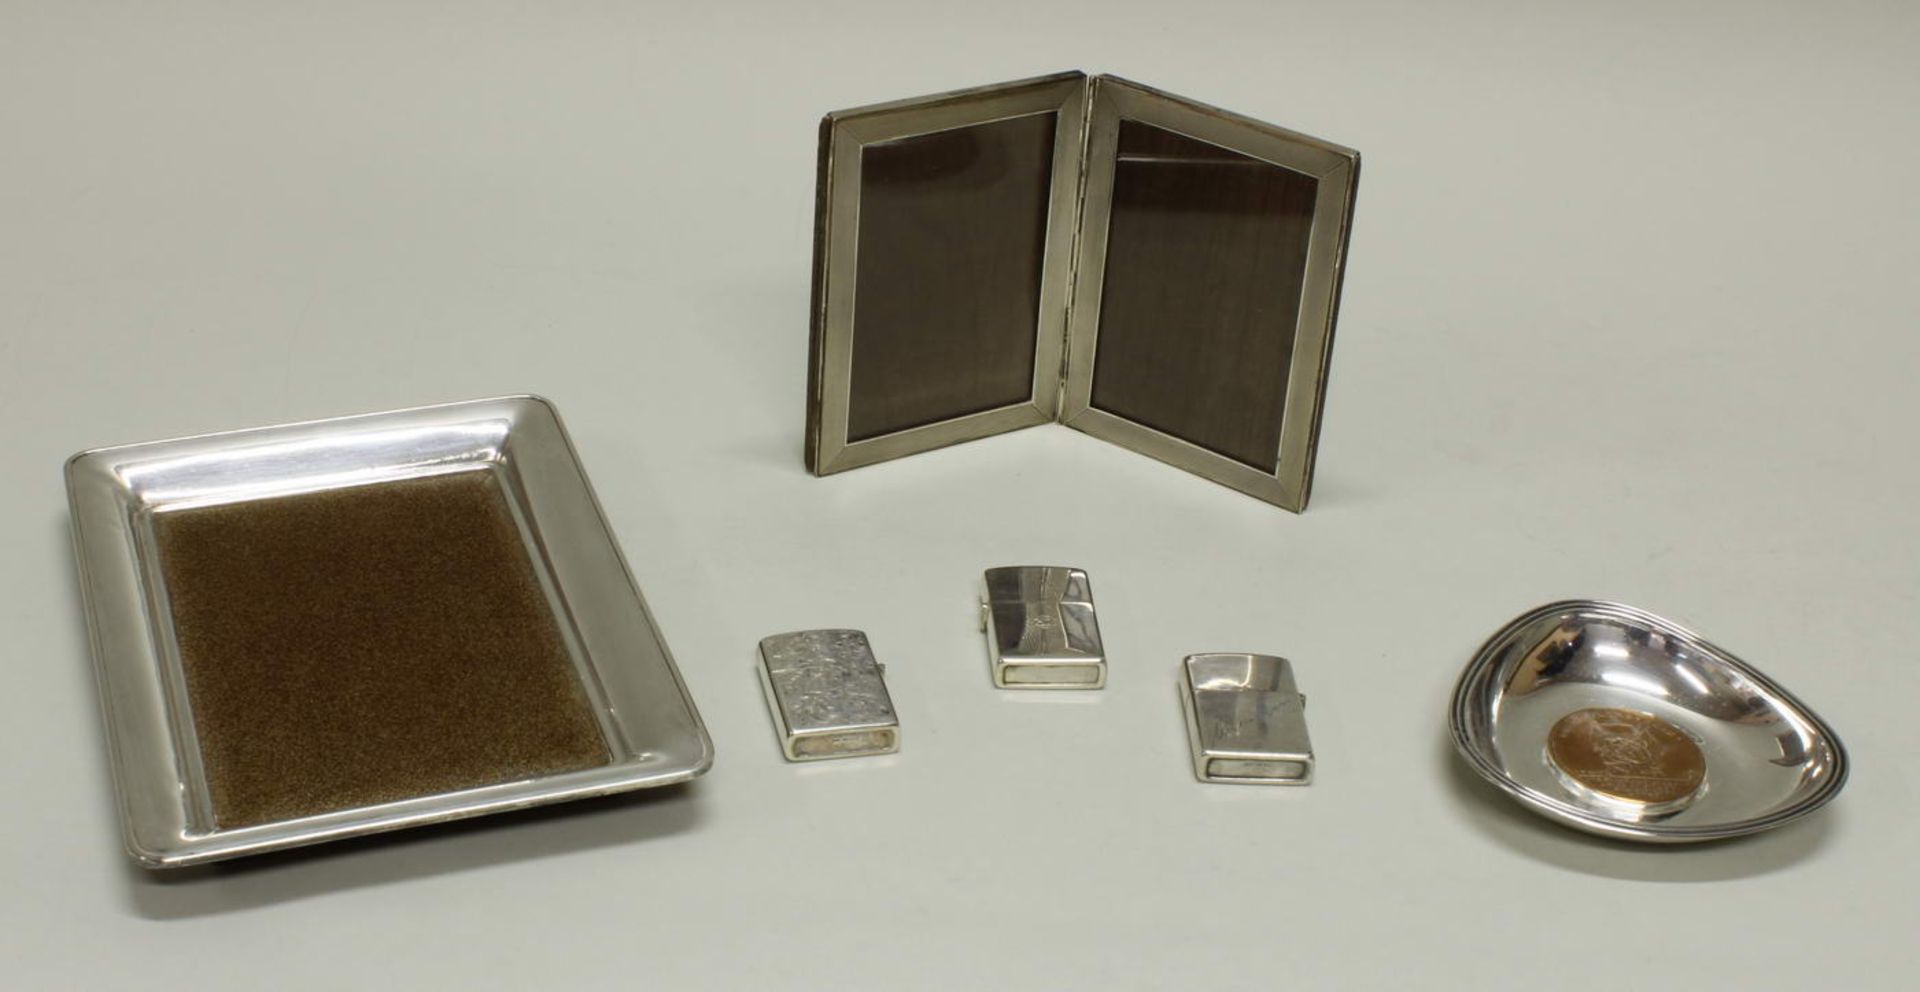 6 Teile, Silber, diverse Ausführungen mit verschiedenen Materialen: 3 Feuerzeuge, Münzschale, - Image 2 of 2